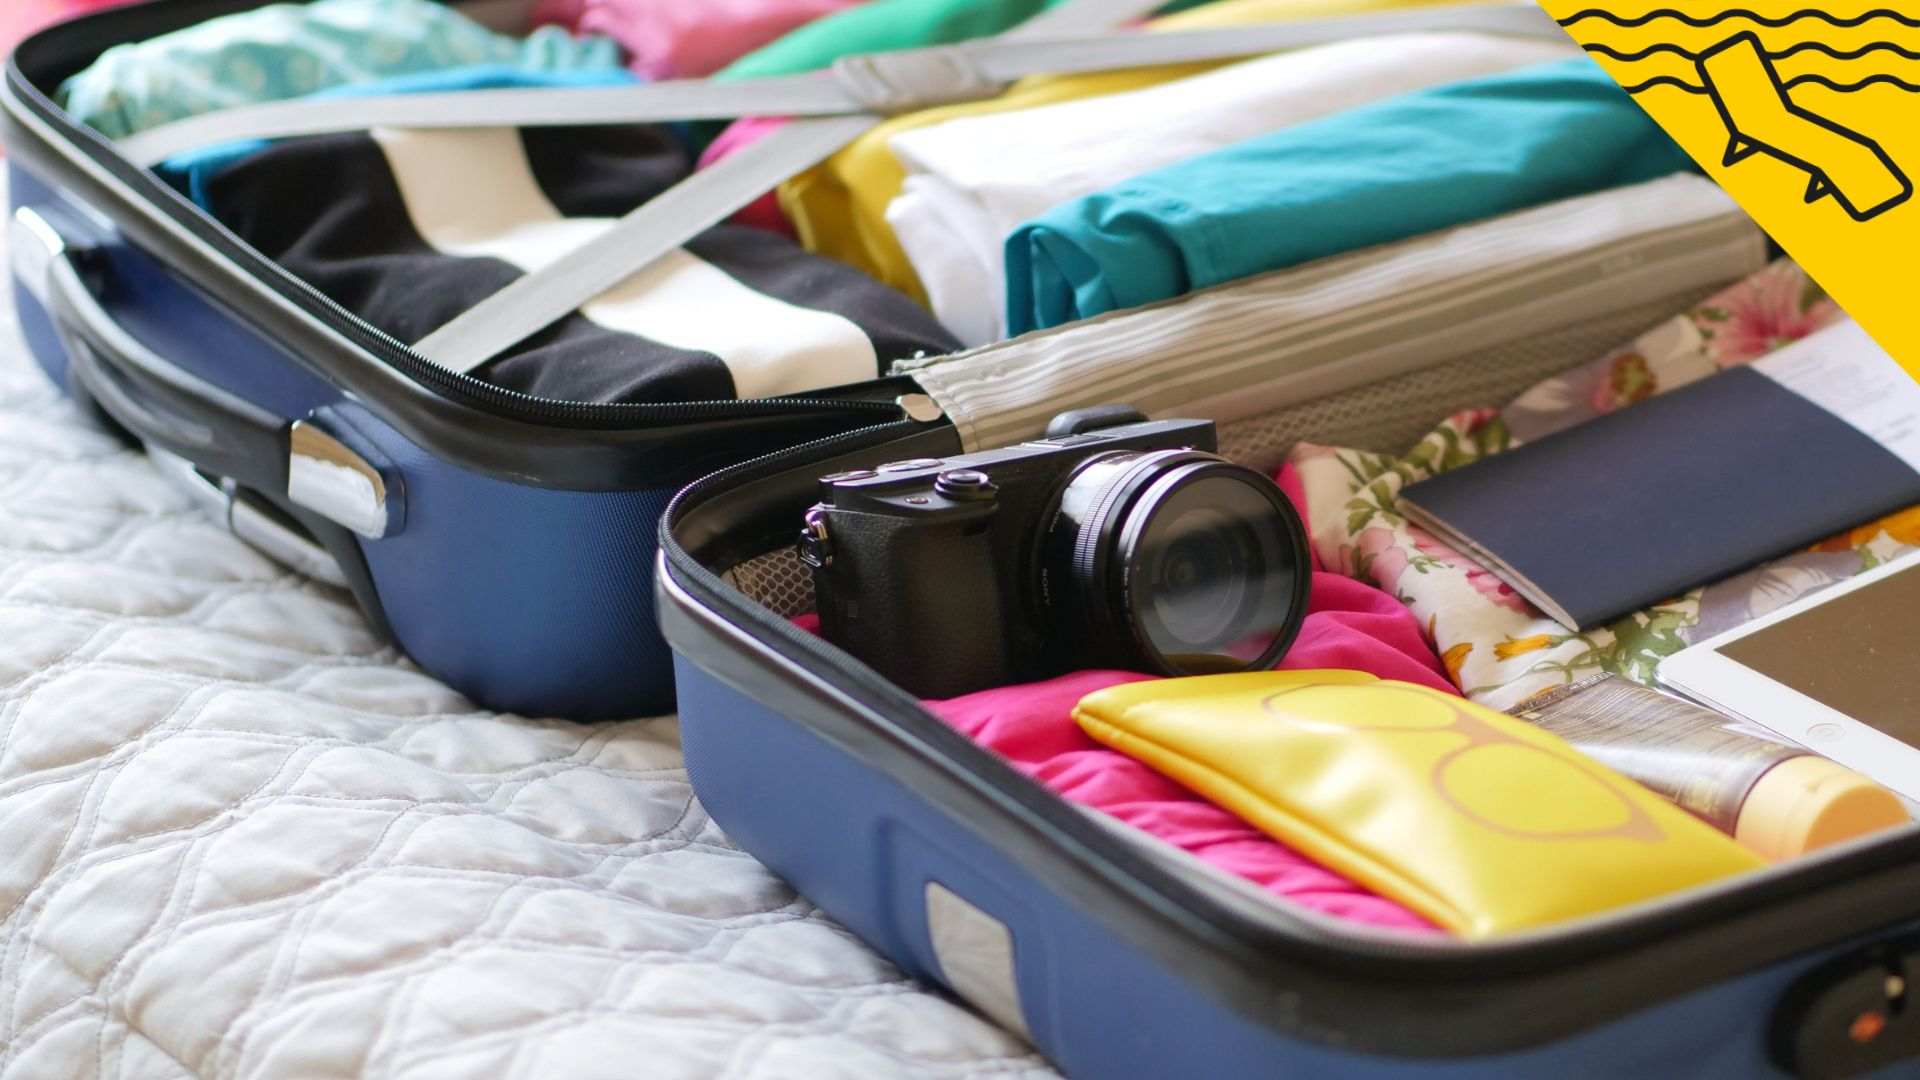 Las 4 maneras de colar más equipaje en el avión sin pagar una maleta